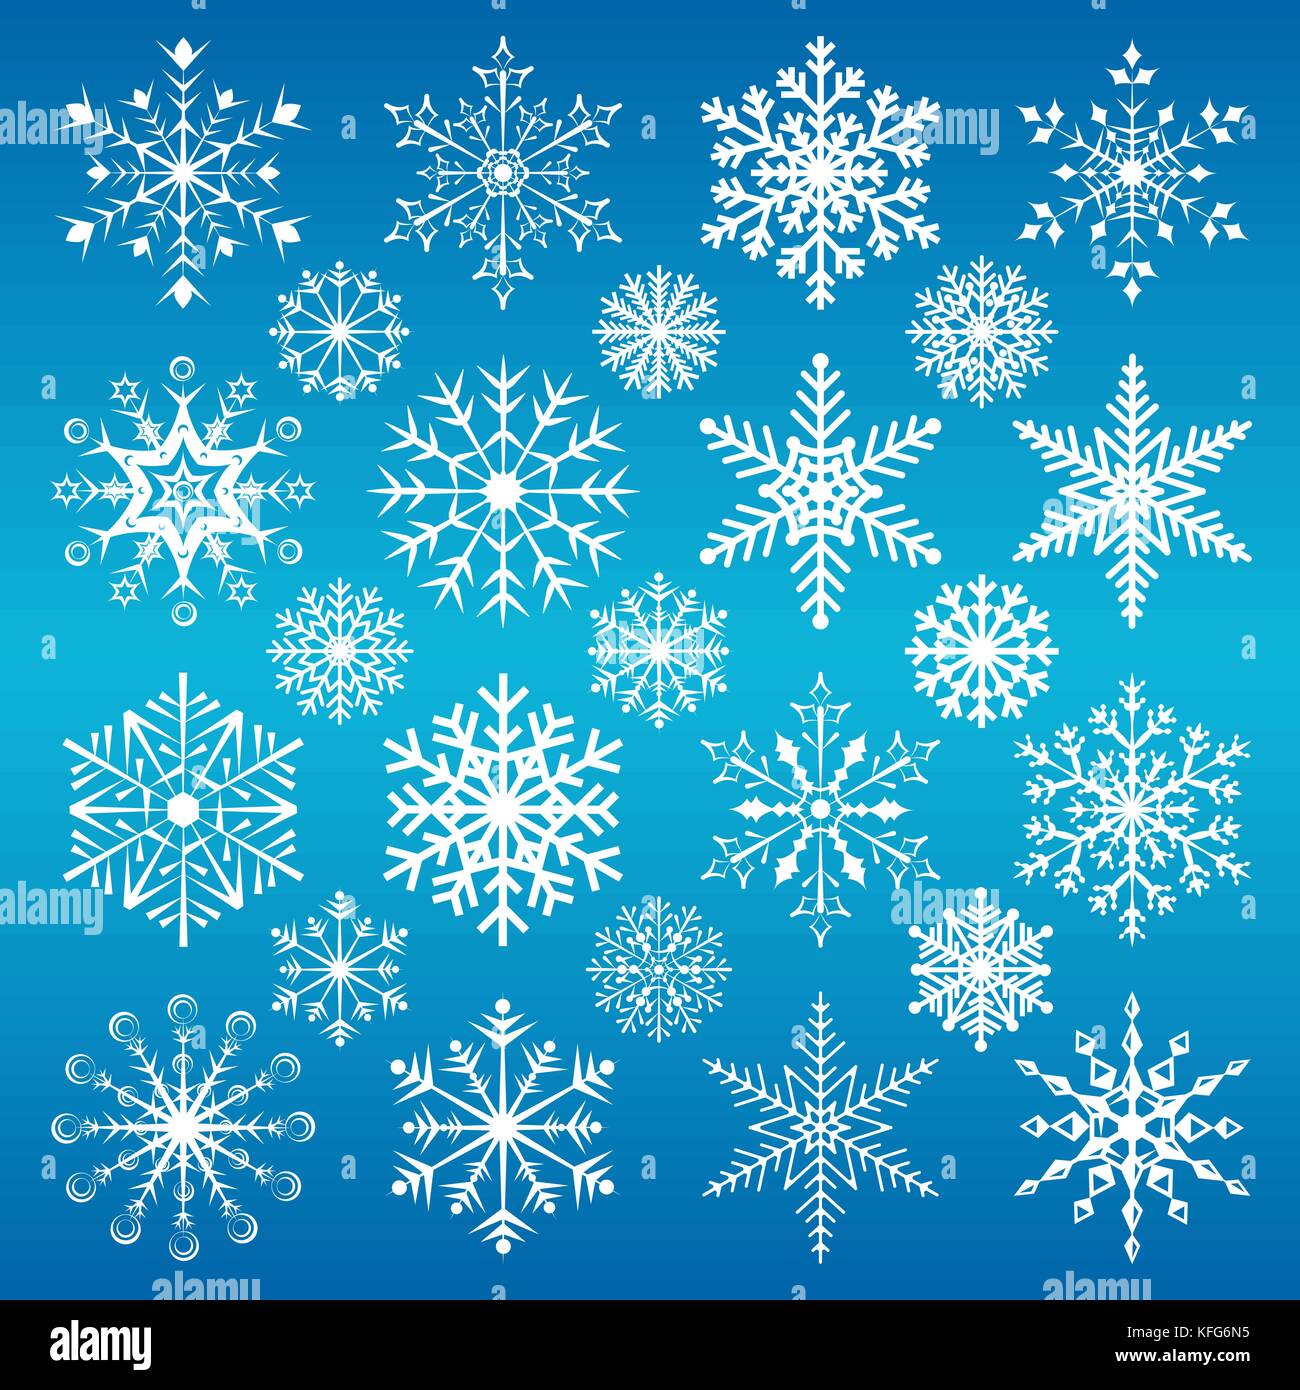 Sfondi Natalizi Con Neve.Il Natale Di Fiocchi Di Neve Su Sfondo Blu Immagine E Vettoriale Alamy